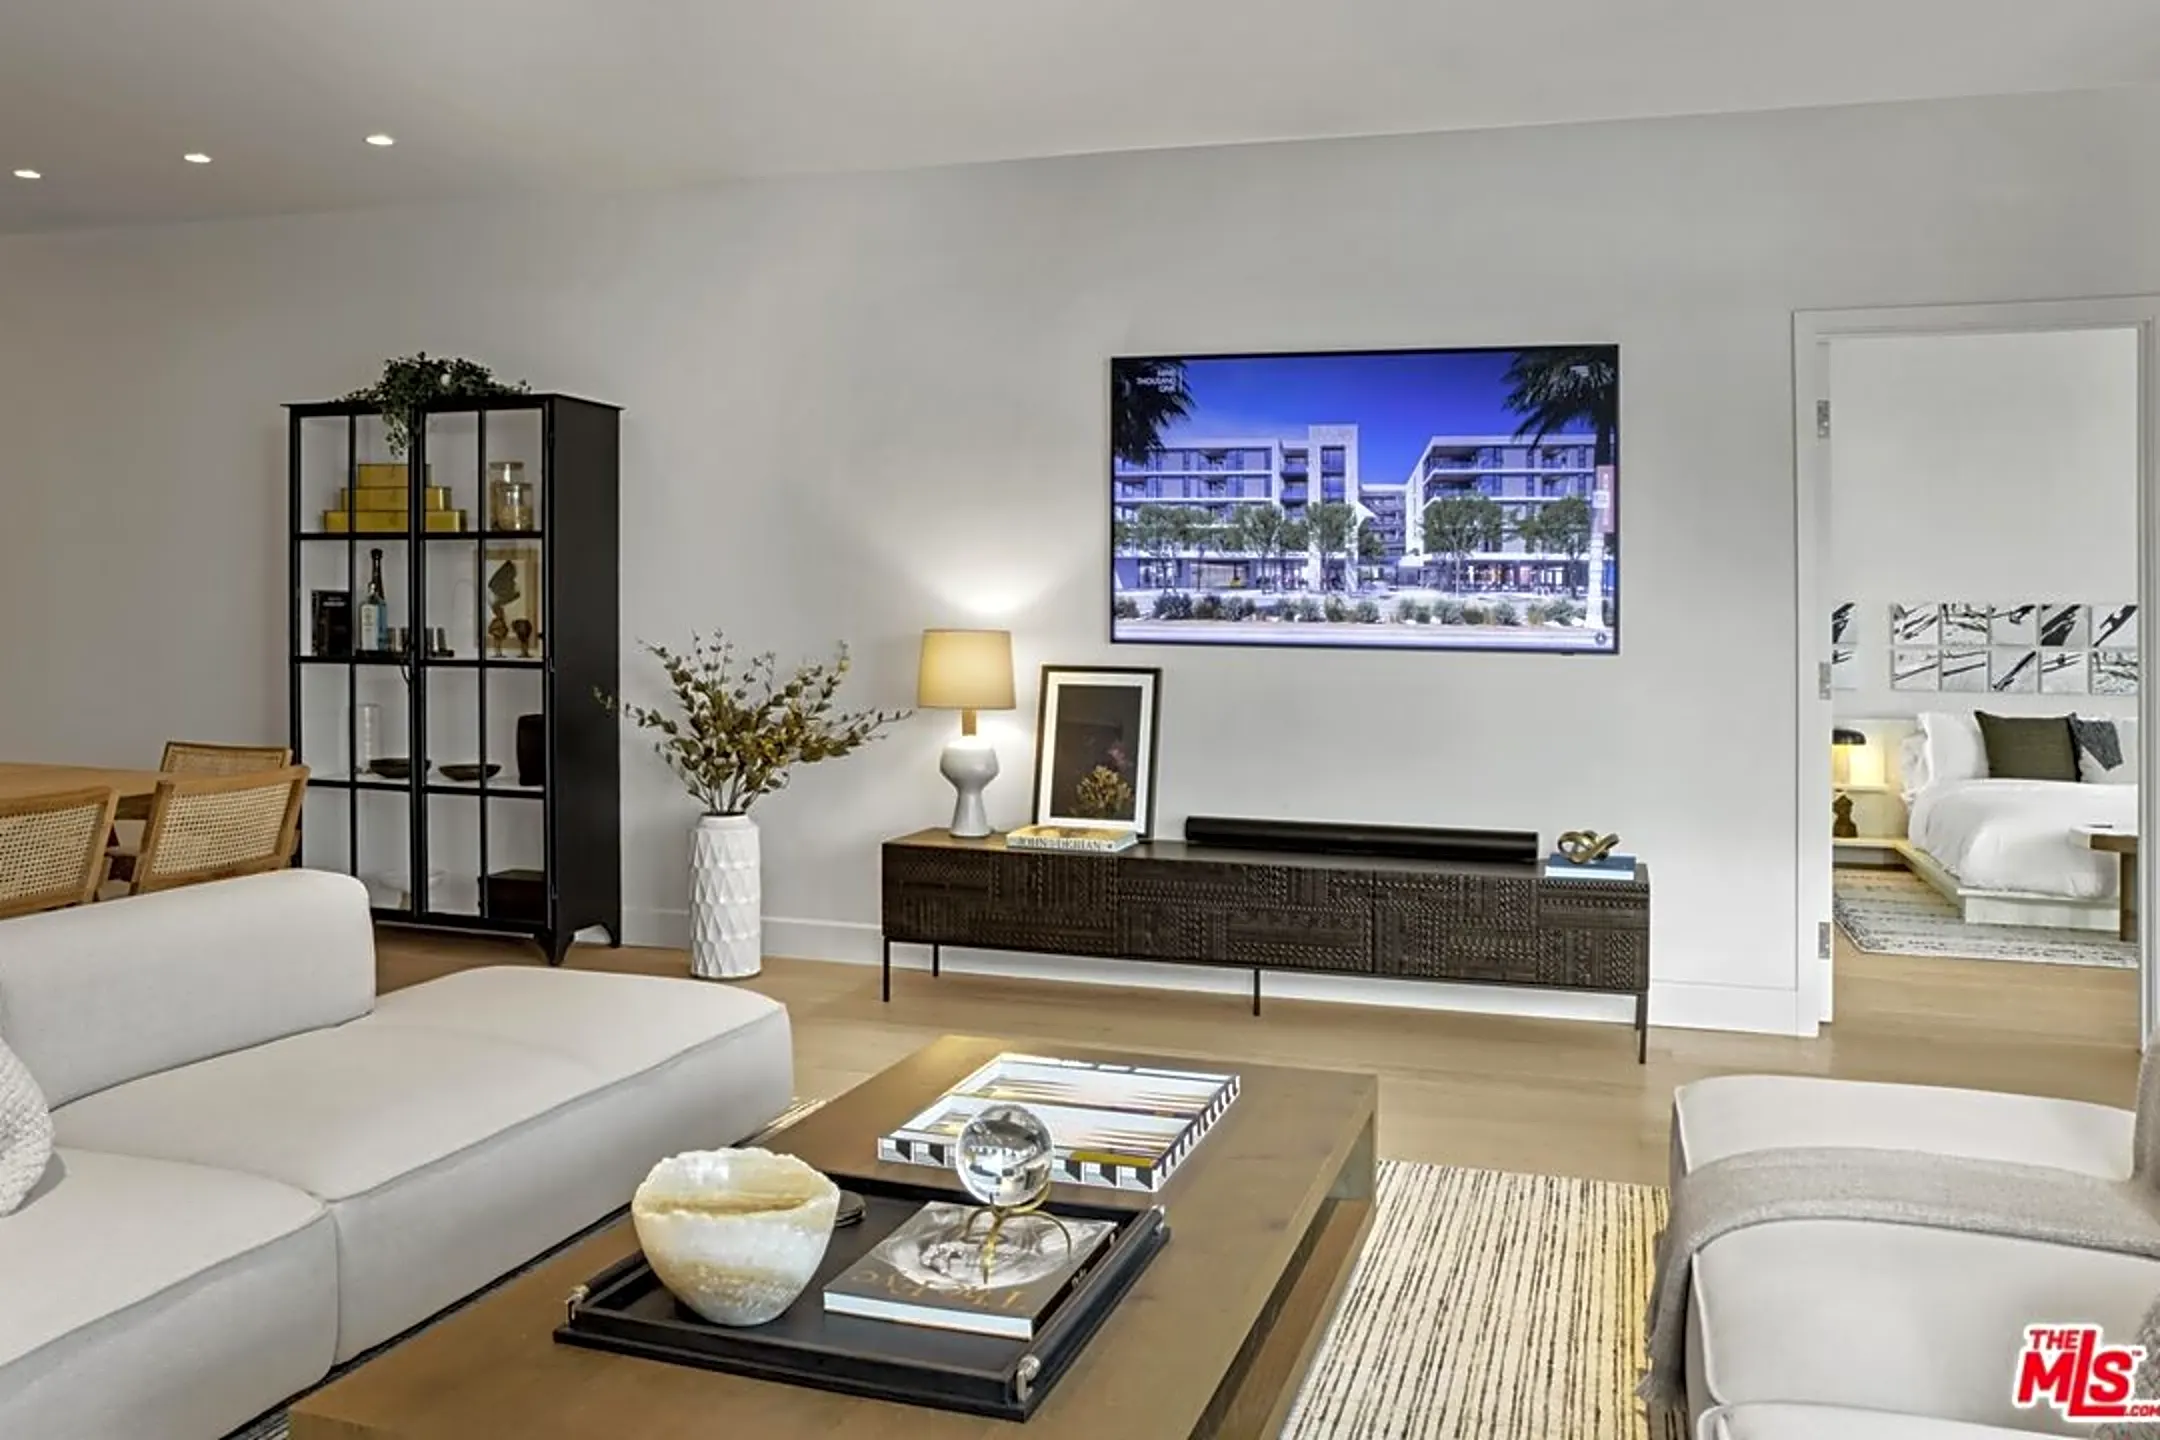 Living Room - 9001 Santa Monica Blvd #501 - West Hollywood, CA